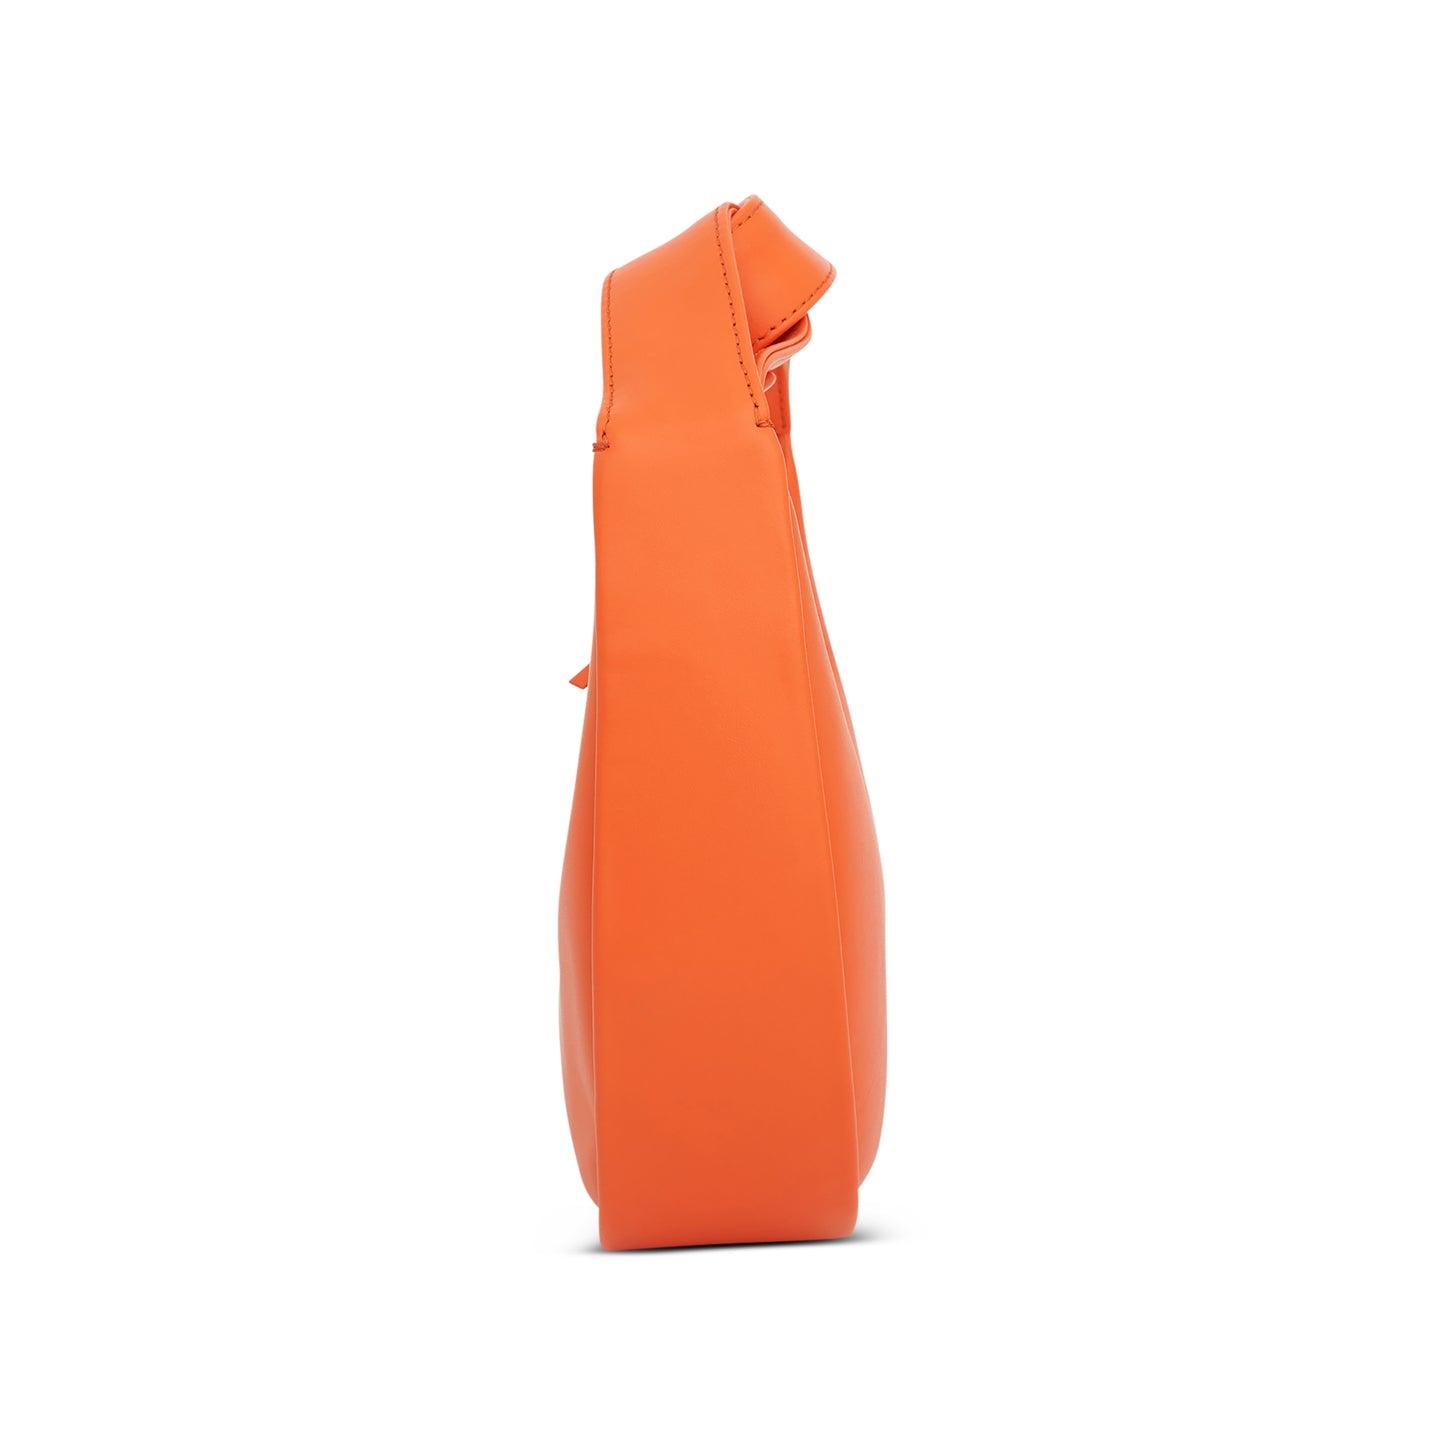 Lacerta Hand Bag in Orange